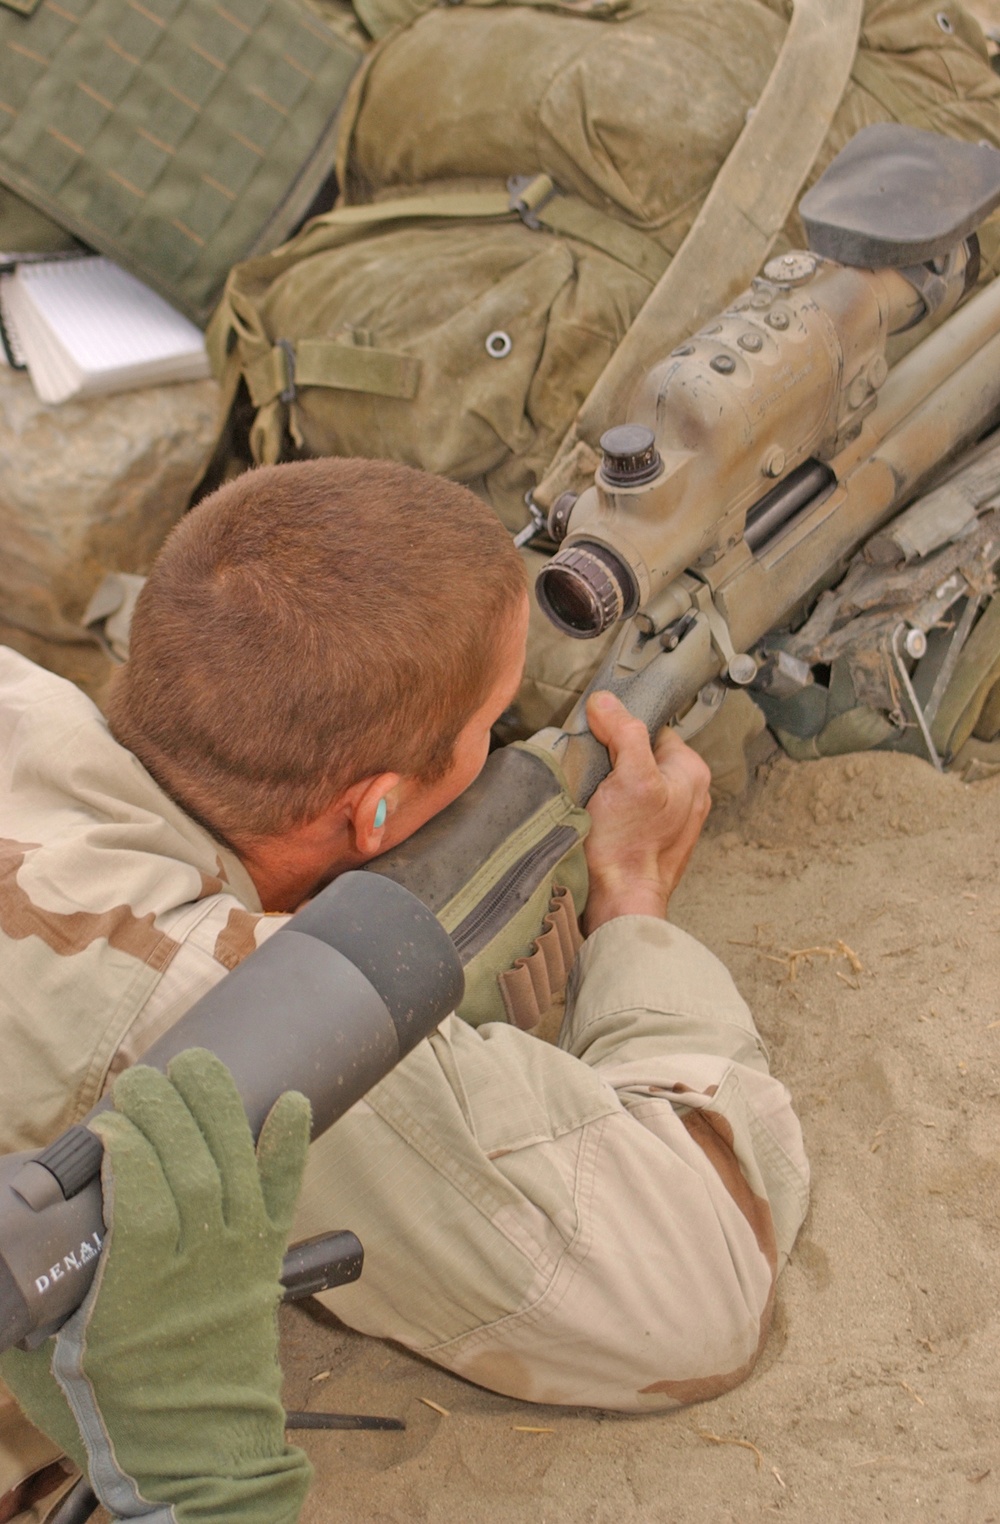 Spc. Joseph Crum fires the M-24 sniper rifle